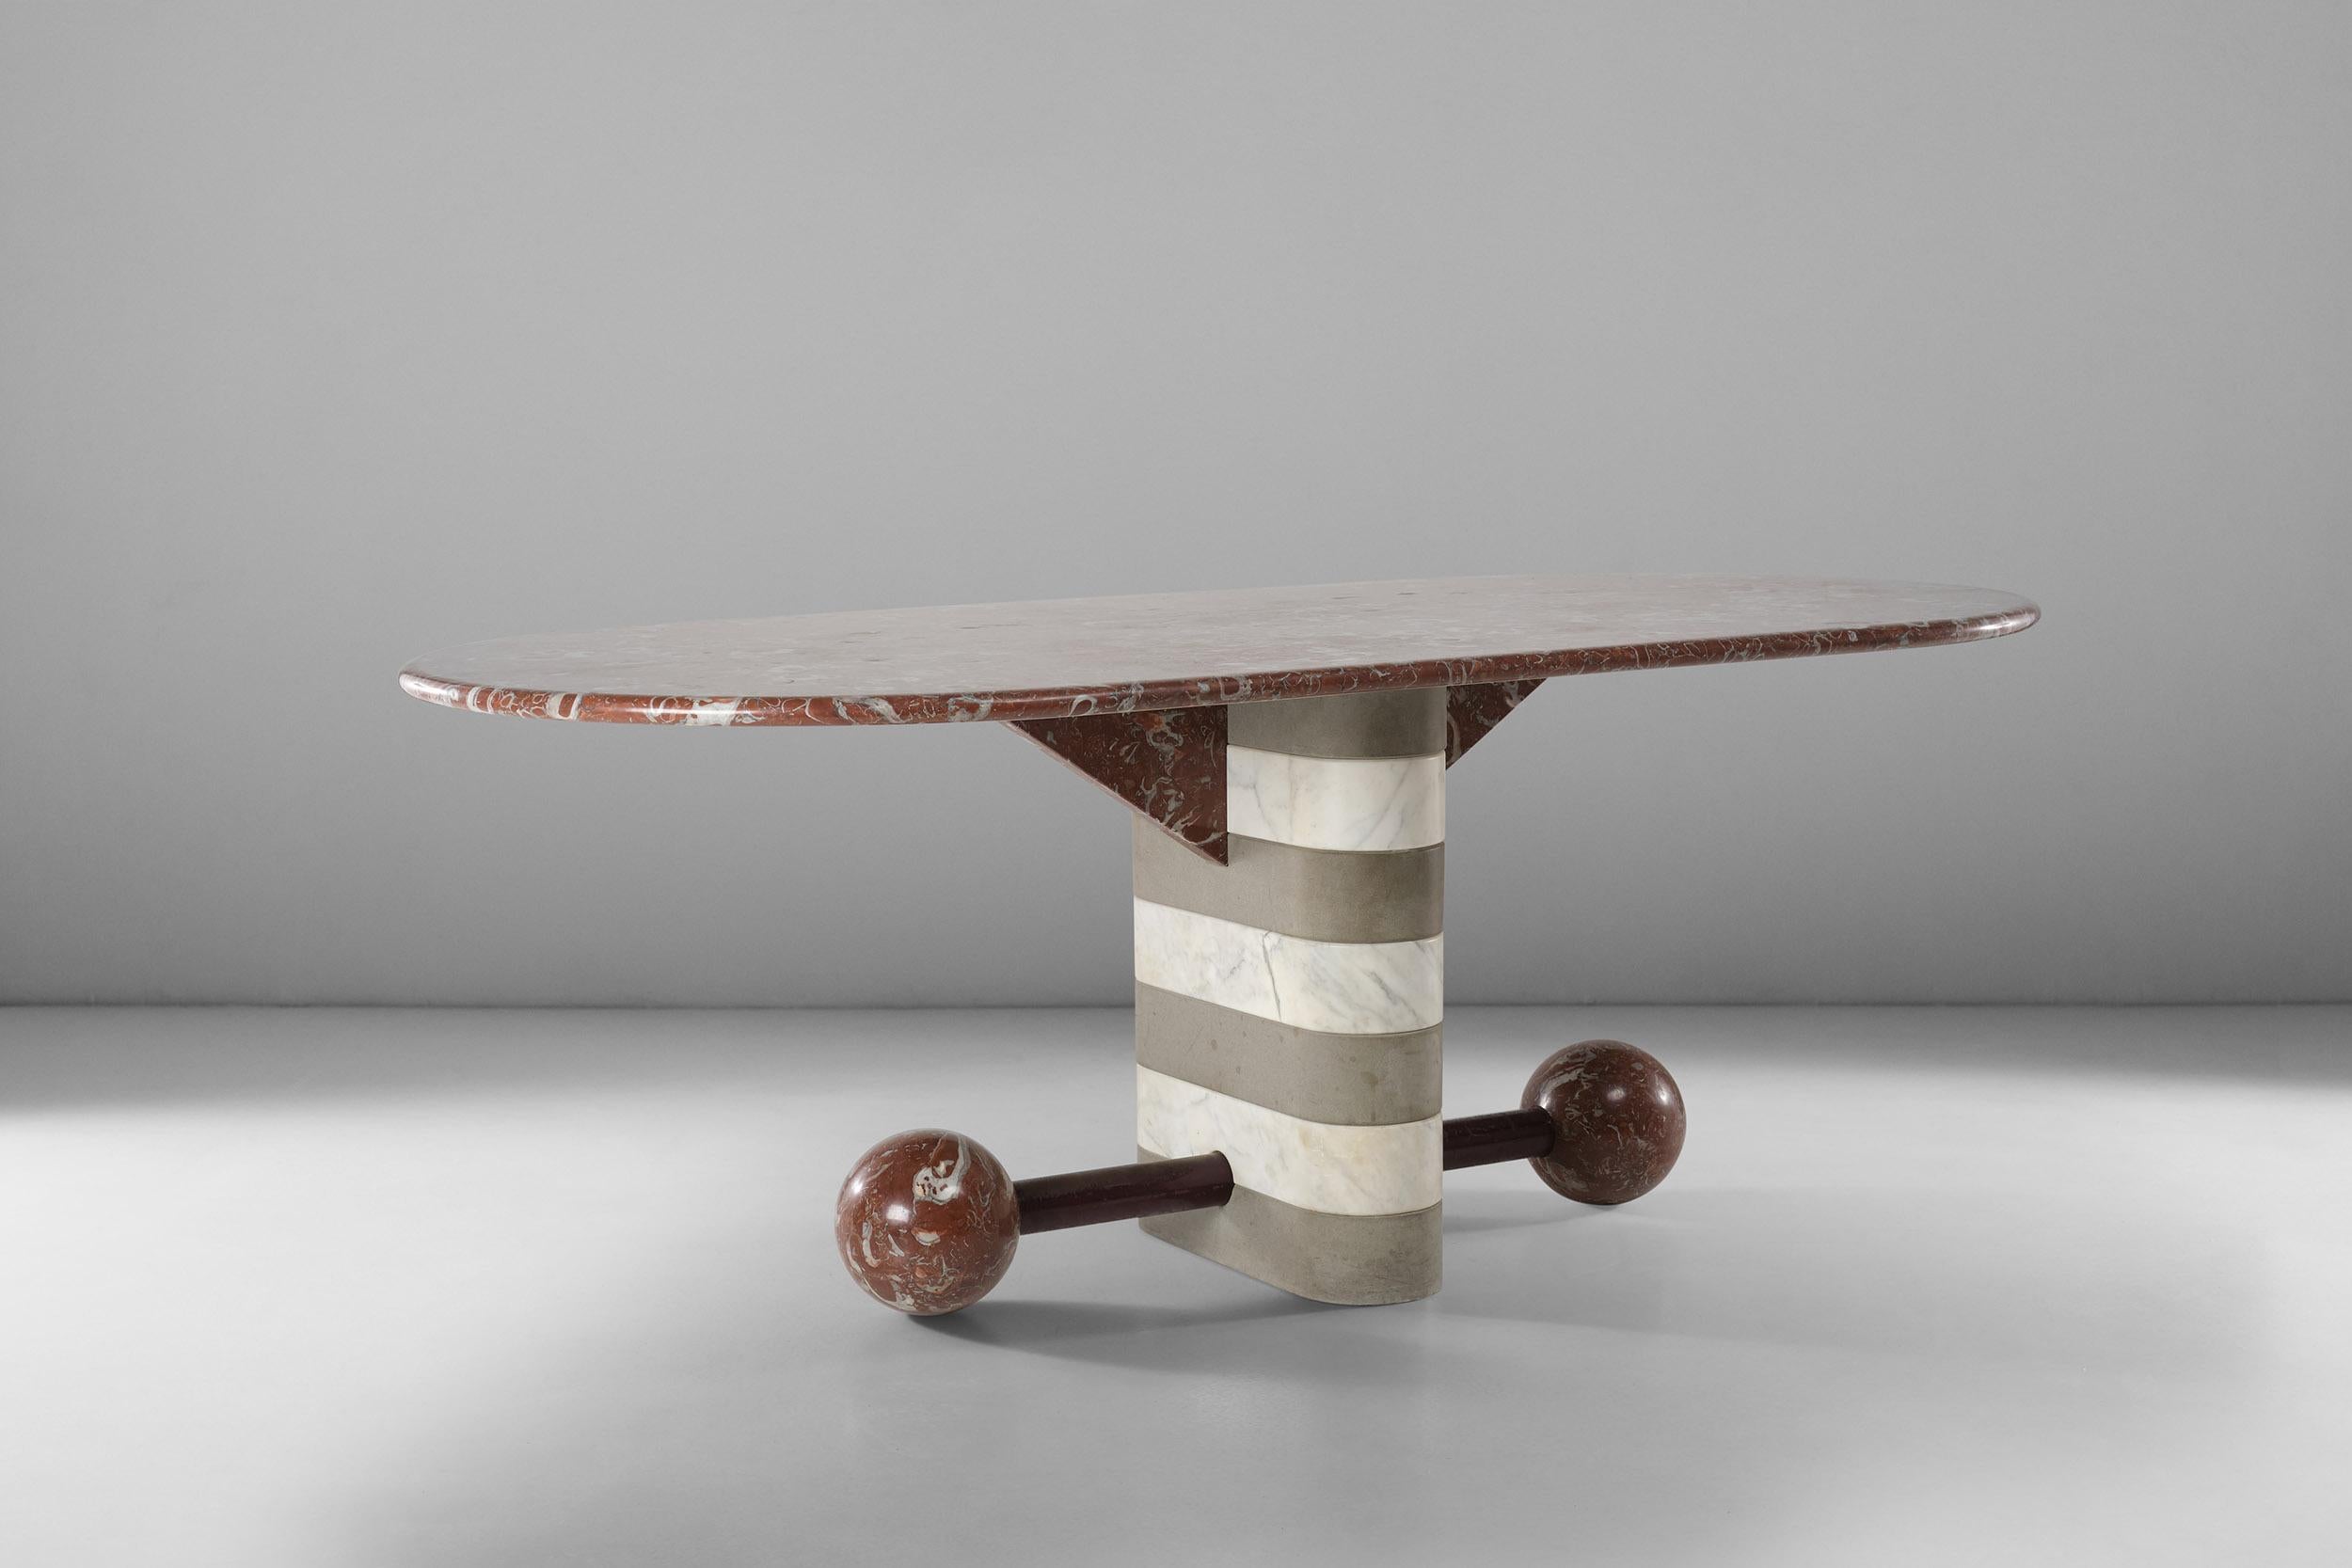 Dieser wunderschöne Tisch aus Marmor und Serena-Stein wurde 1982 von Michele de Lucchi für Memphis entworfen. Ikonisch und einzigartig in seinen Formen, ist dies ein außergewöhnliches Beispiel für postmodernes Design. Sein abgerundetes einzelnes